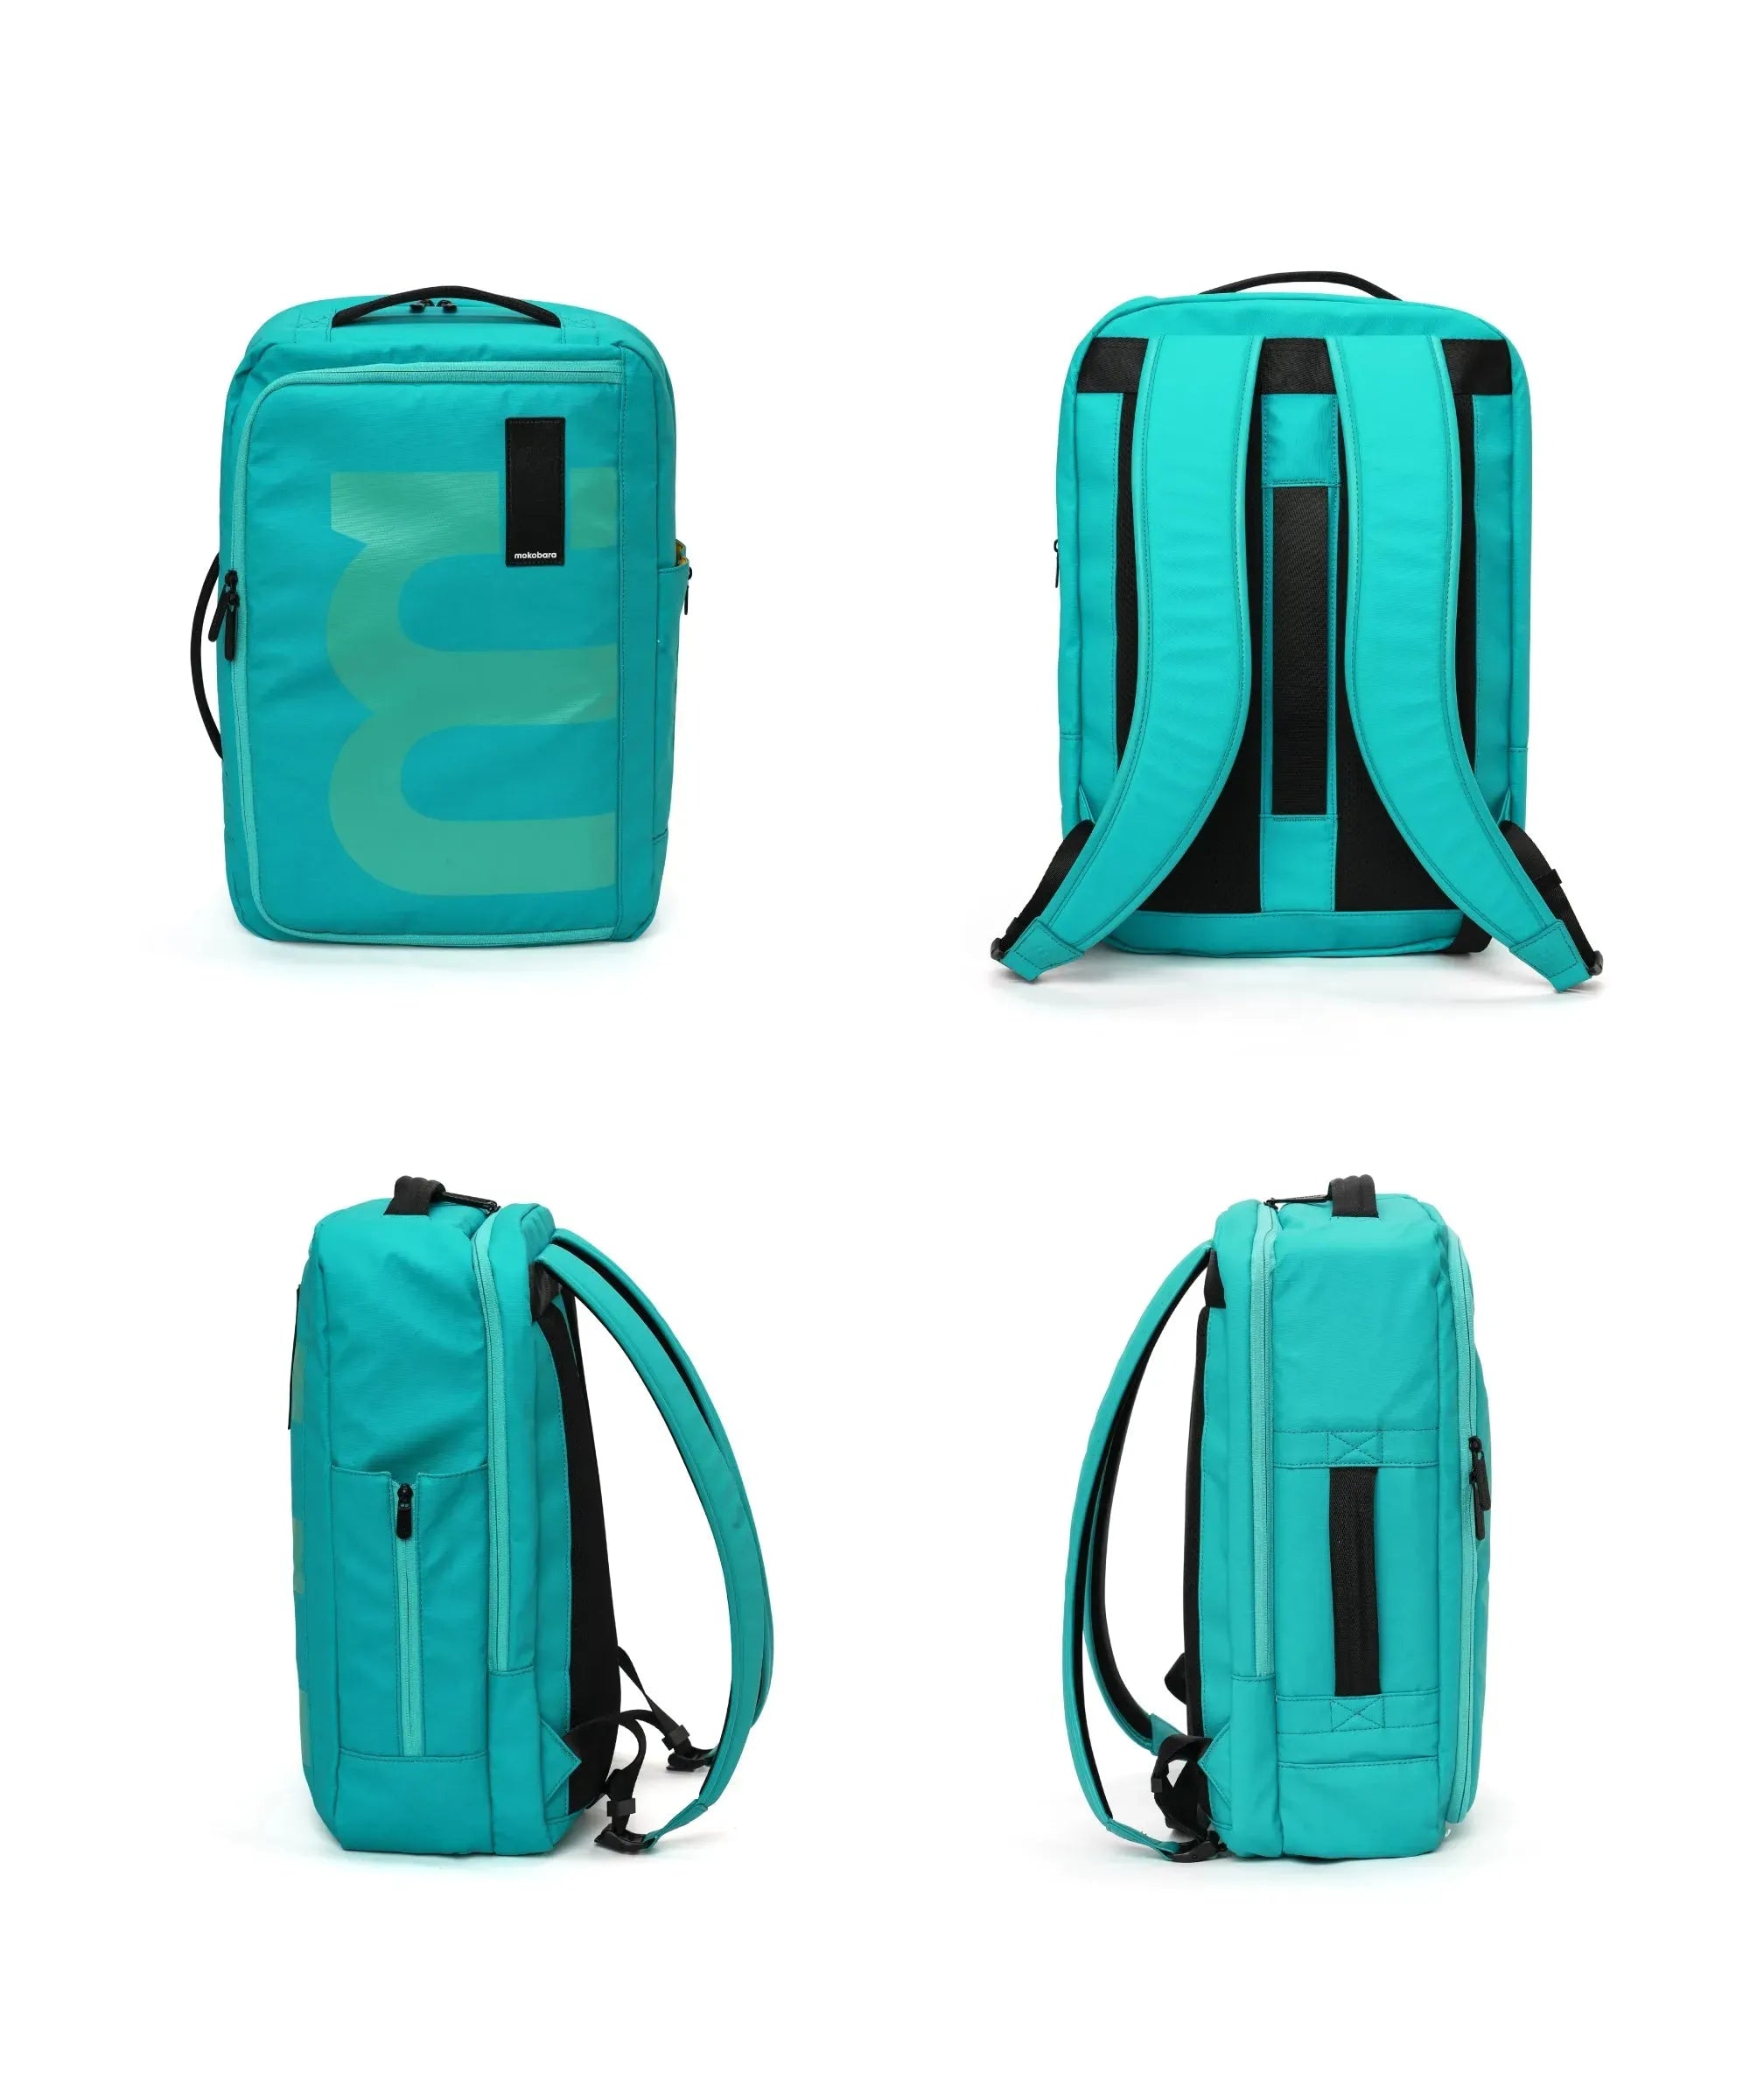 Color_My Sky | The Em Travel Backpack - 32L